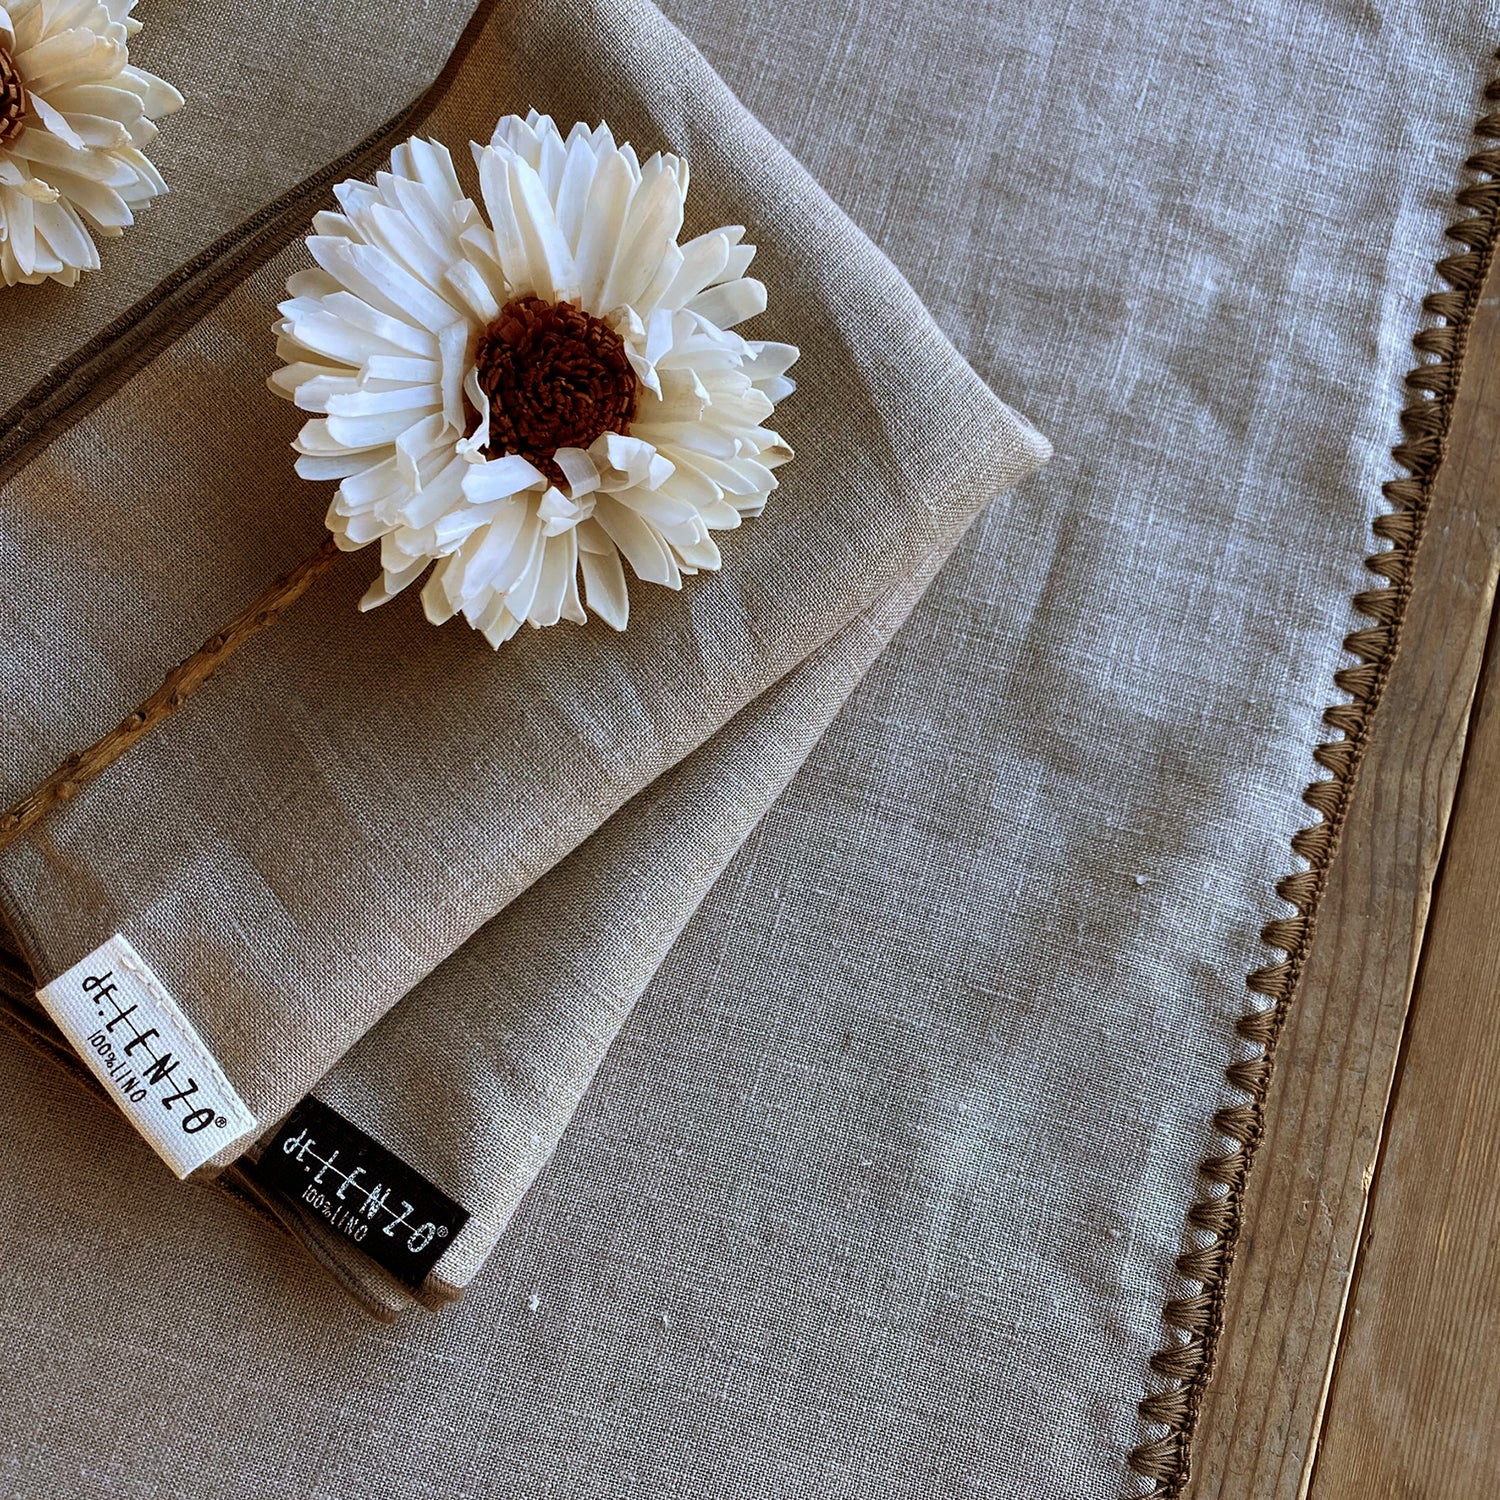 Detalle de servilletas y camino de mesa natural con flor blanca seca.